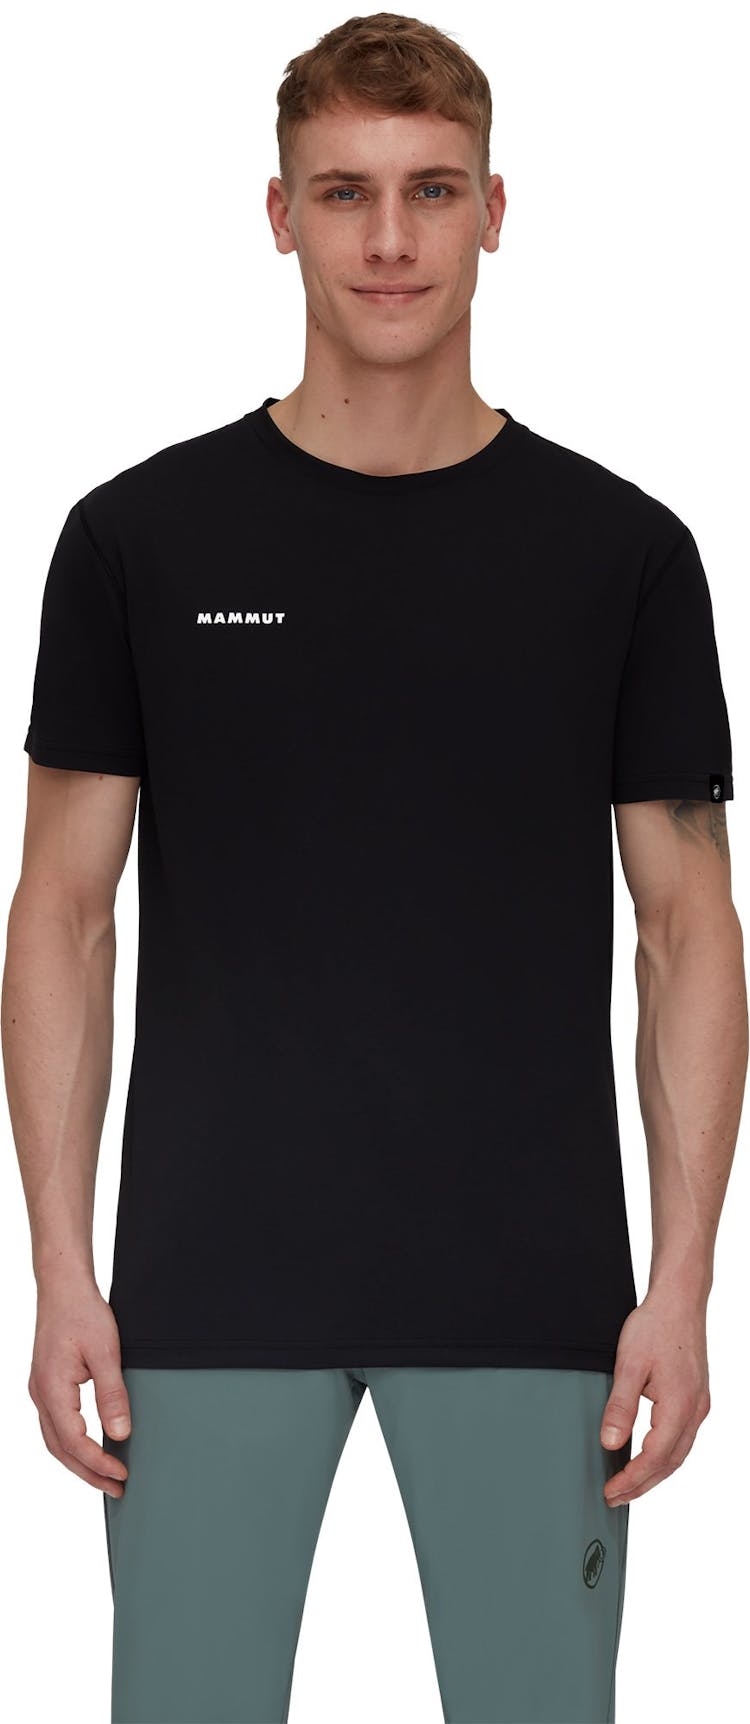 Numéro de l'image de la galerie de produits 3 pour le produit T-shirt Sport Massone - Homme